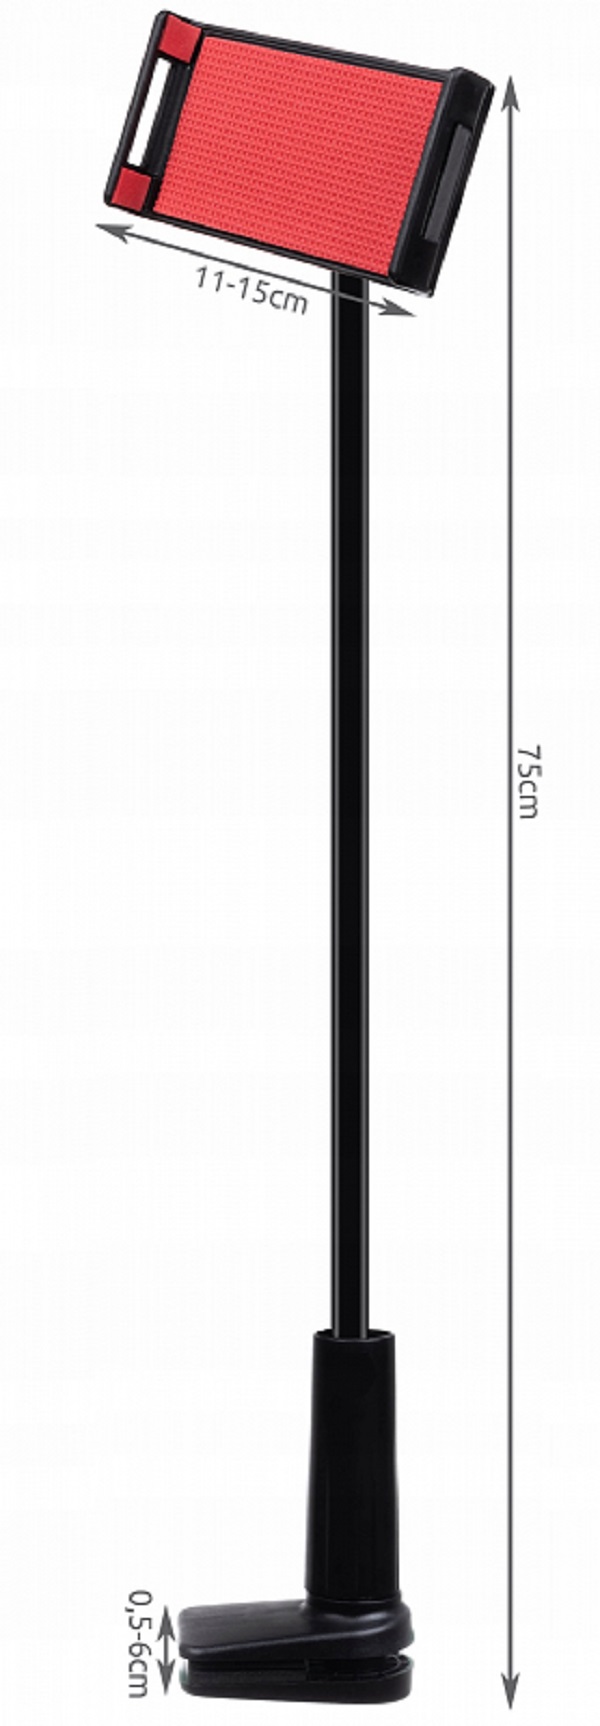 Suport flexibil pentru telefon sau tableta montare pe birou dimensiuni intre 11-15cm, rotire 360 grade, lungime 75 cm, negru [2]